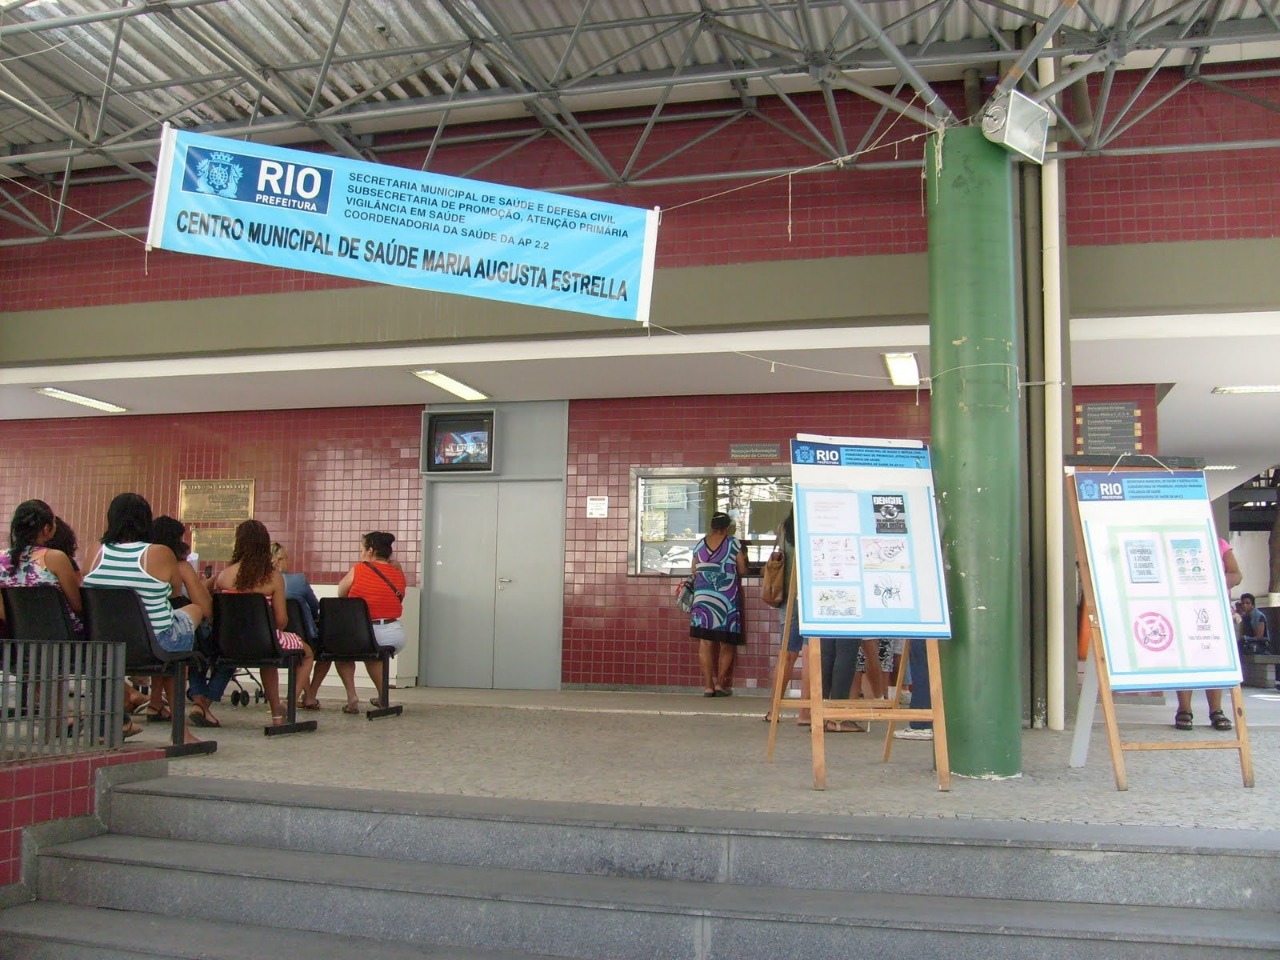 Centro Municipal de Saúde Maria Augusta Estrella